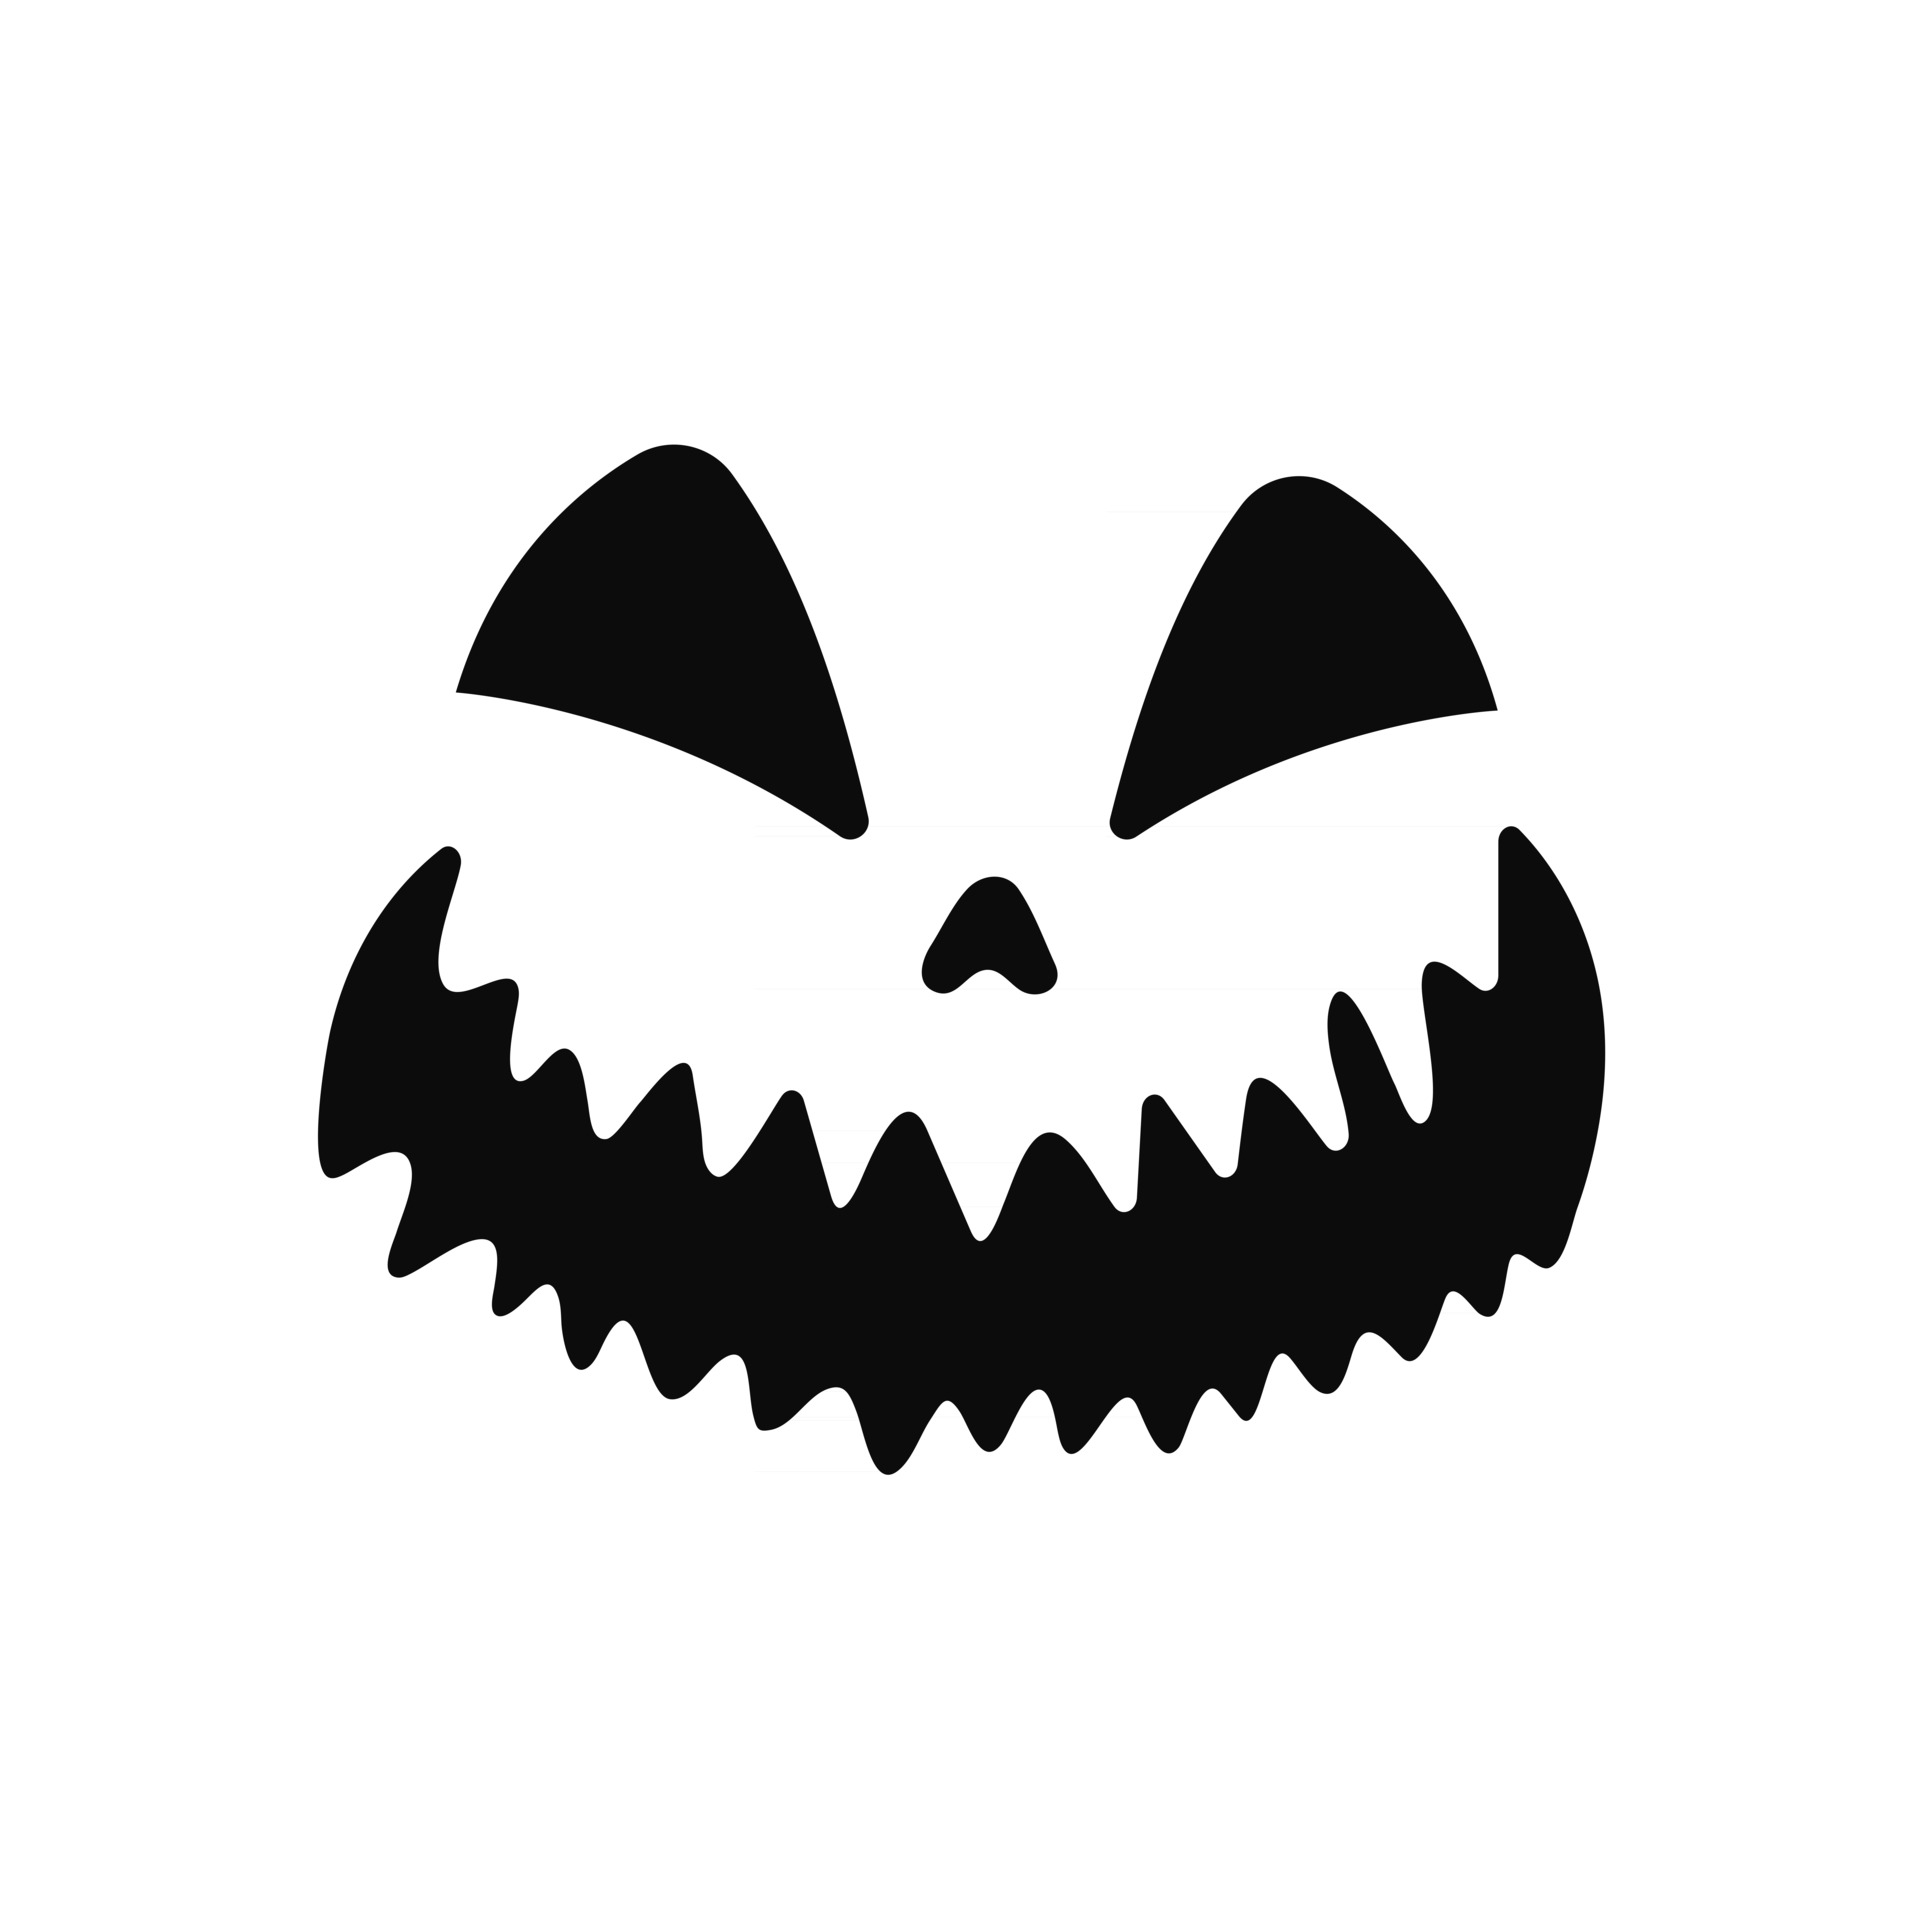 abóbora de halloween com cara assustadora 12272840 Vetor no